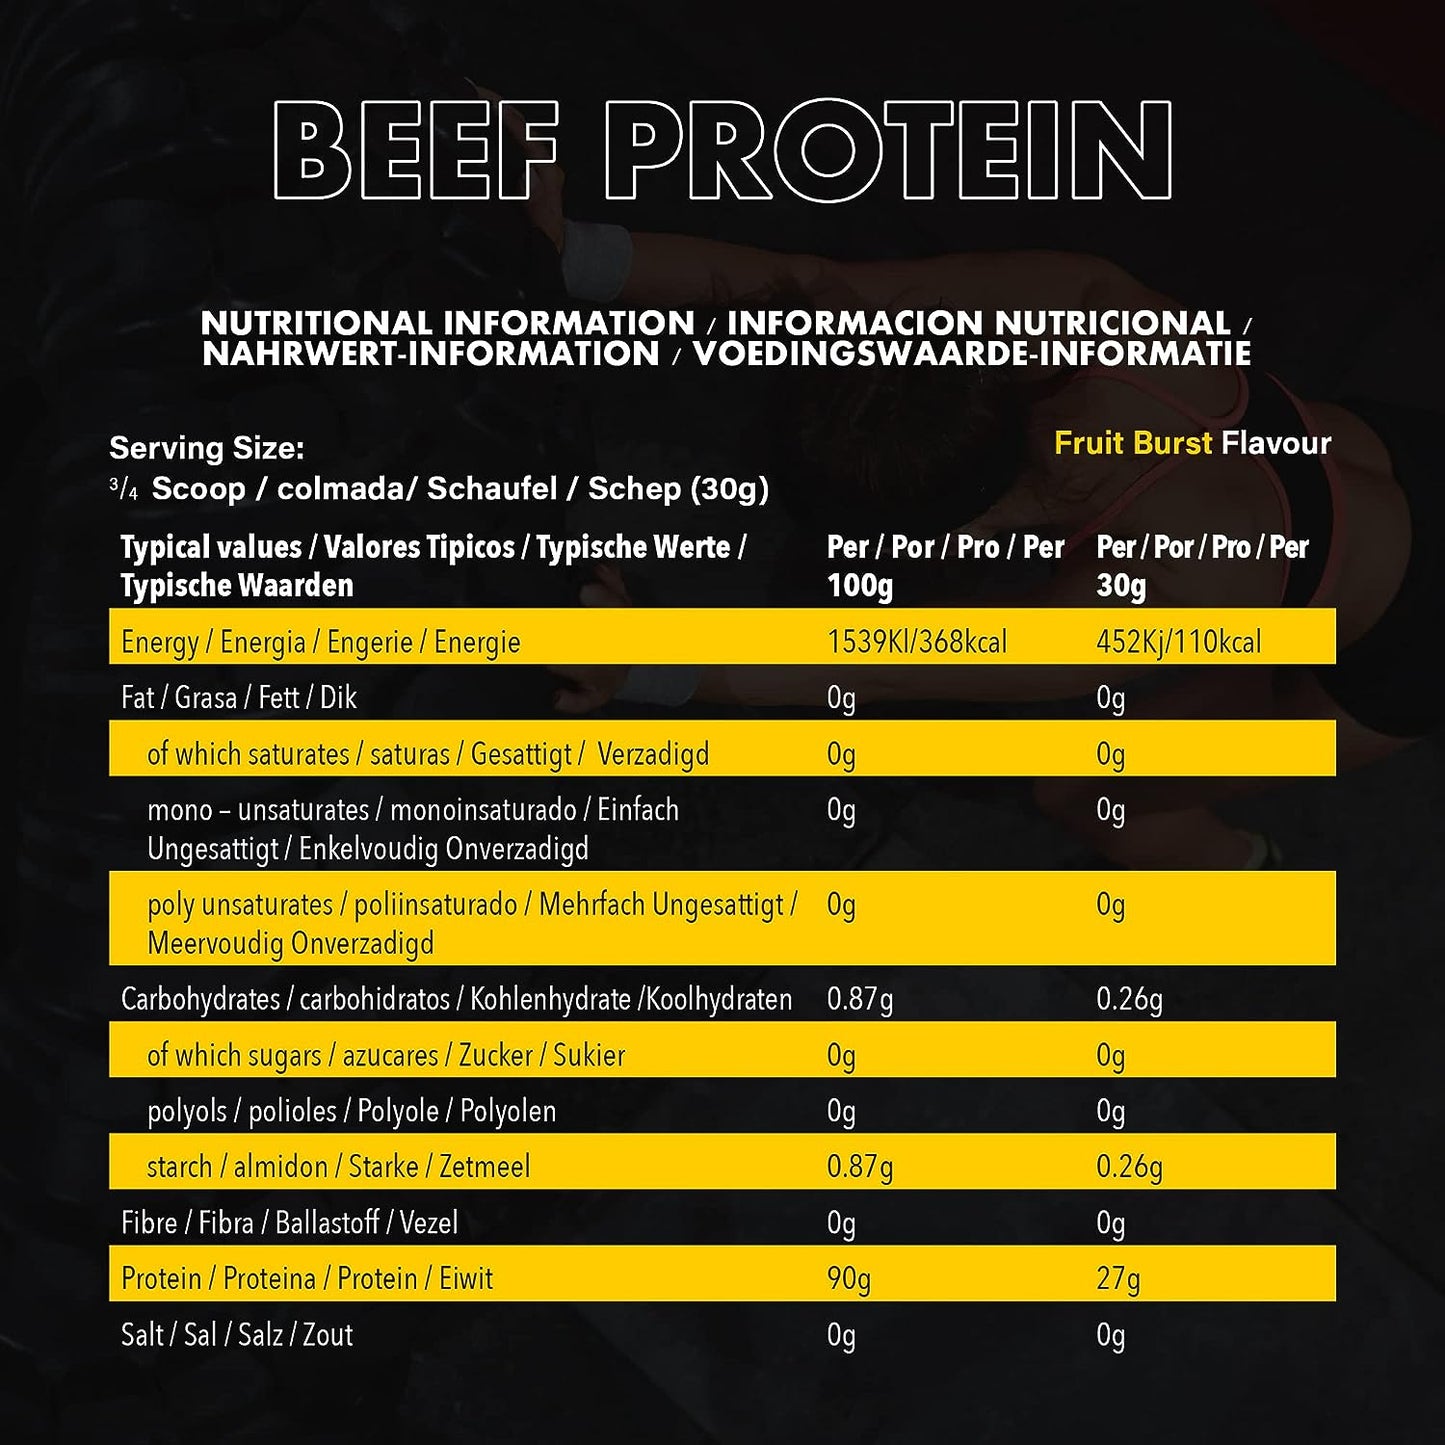 NXT - Beef Protein Isolate Mango & Orange 1.8 kg